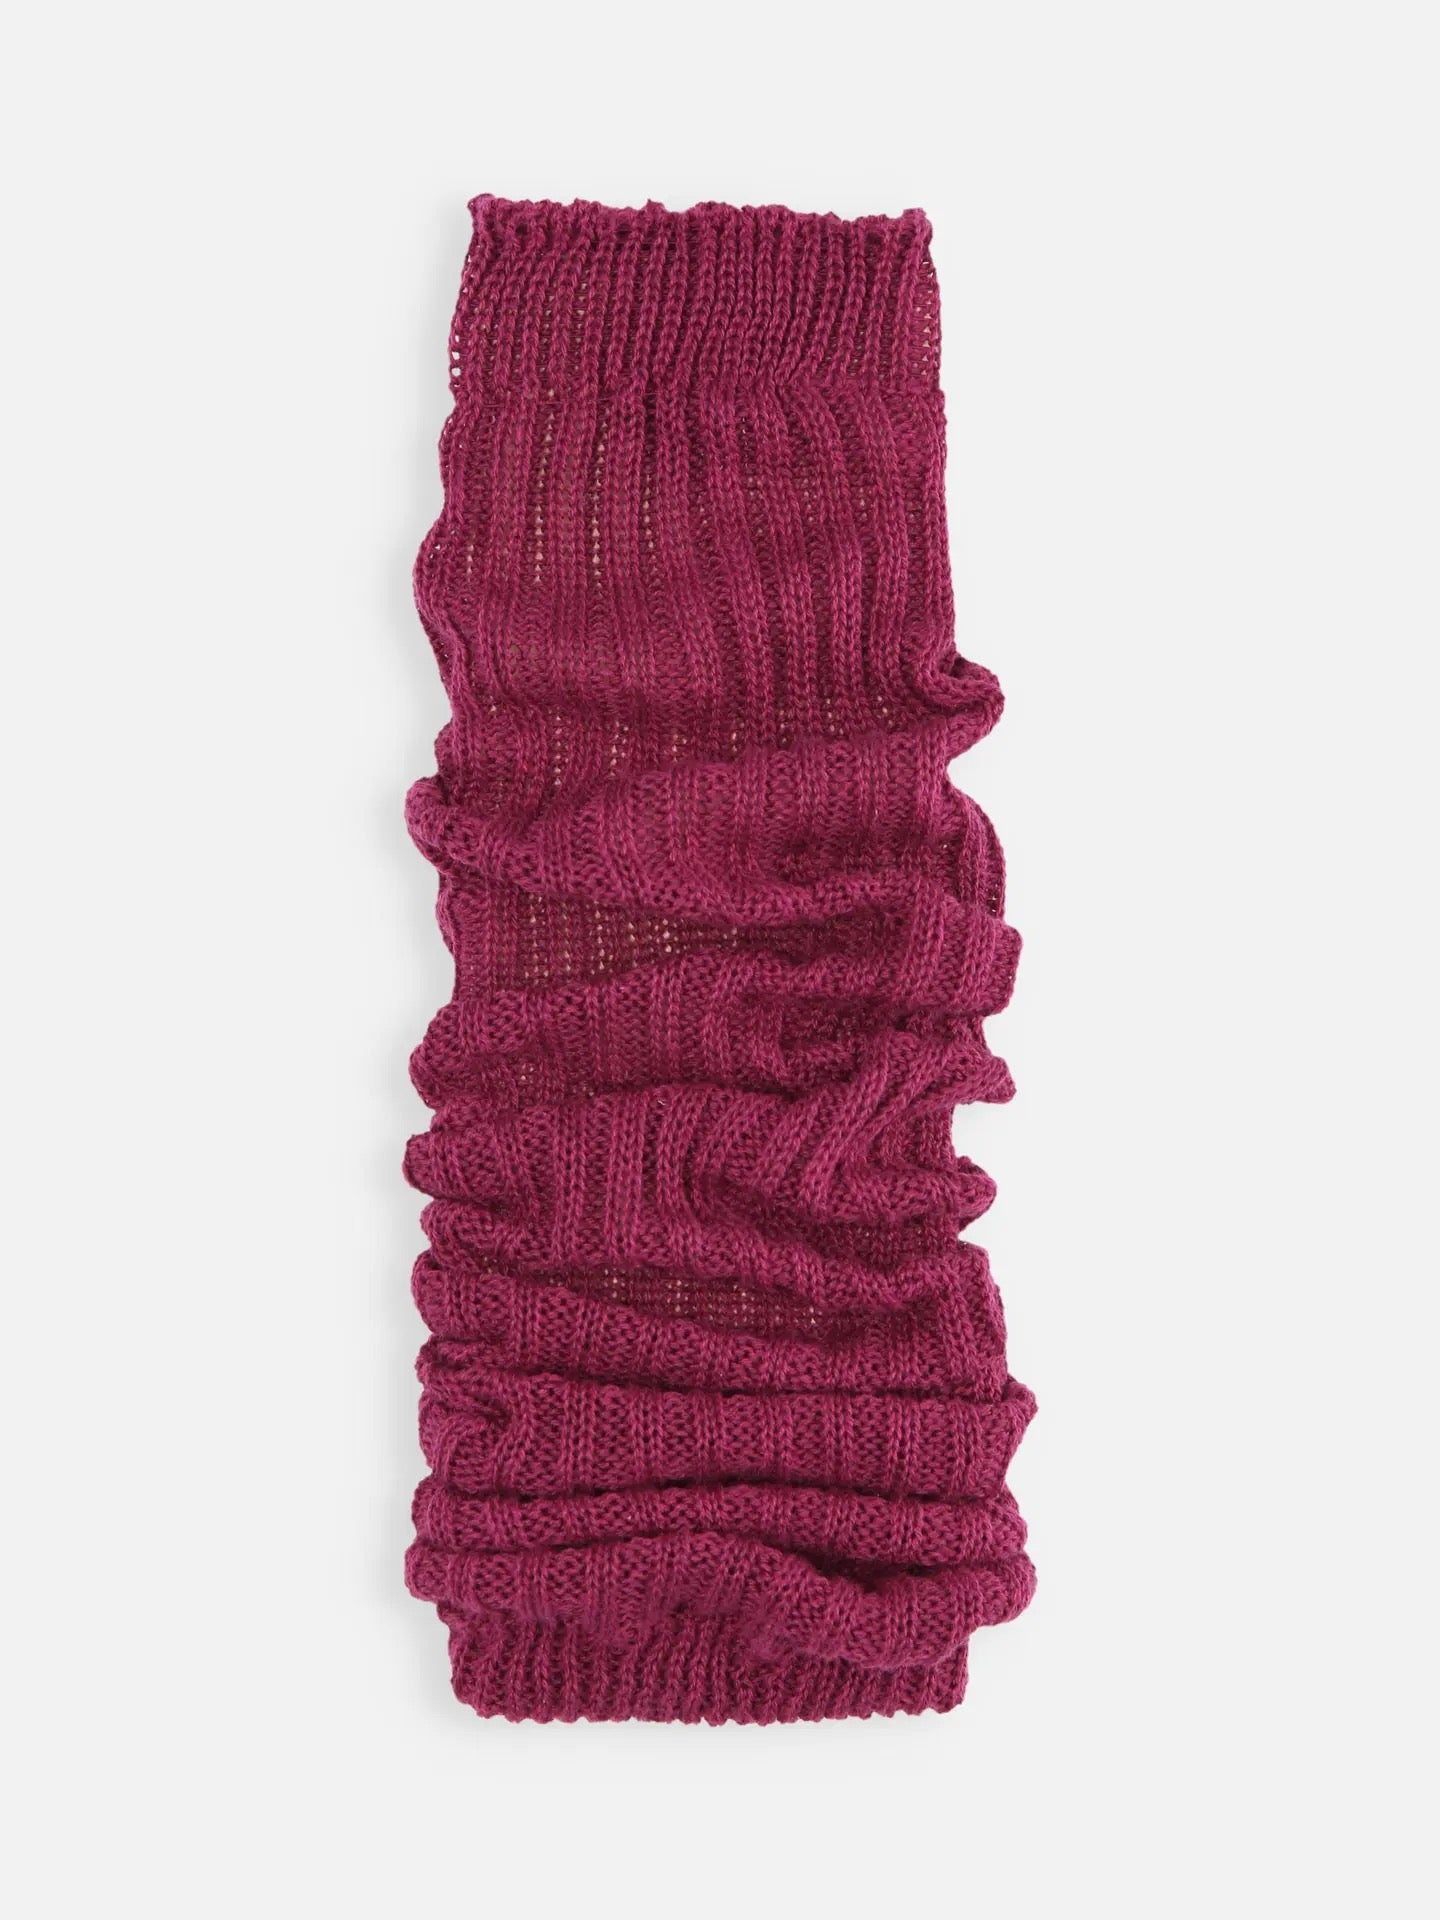 靴下屋Tabio经典素色罗纹保暖舒适堆堆腿套袜套 8色选